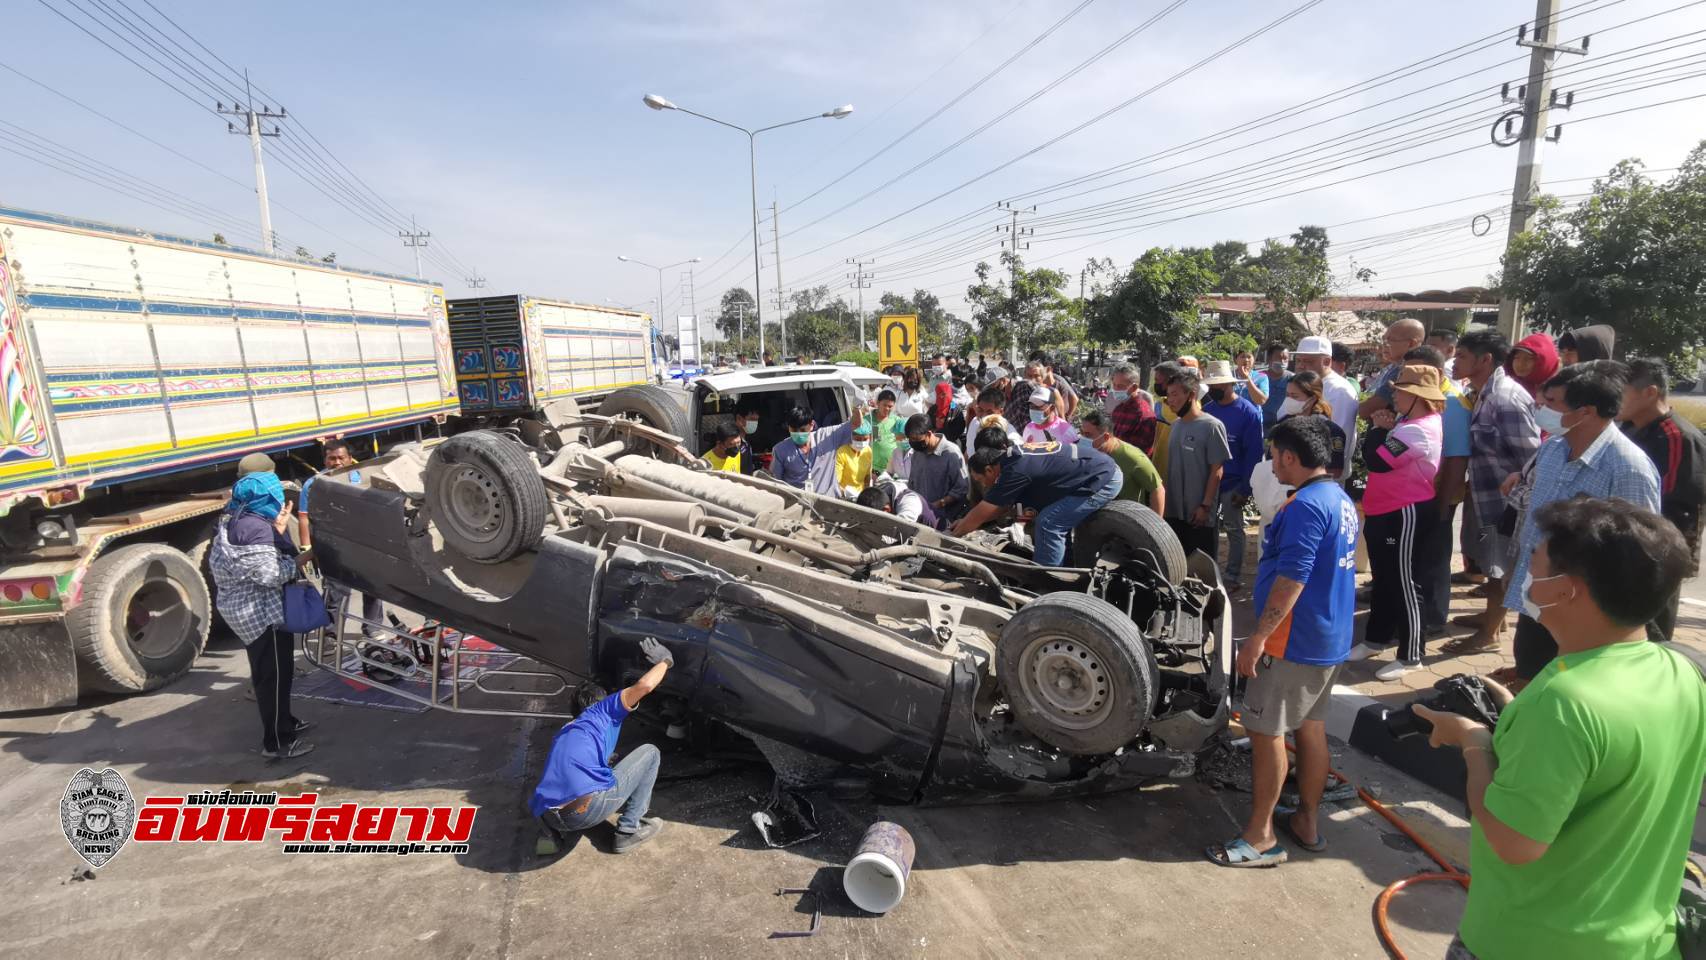 สุพรรณบุรี-รถกระบะเสียหลักข้ามเกราะกลางประสานงารถพ่วงเจ็บ 4 ราย